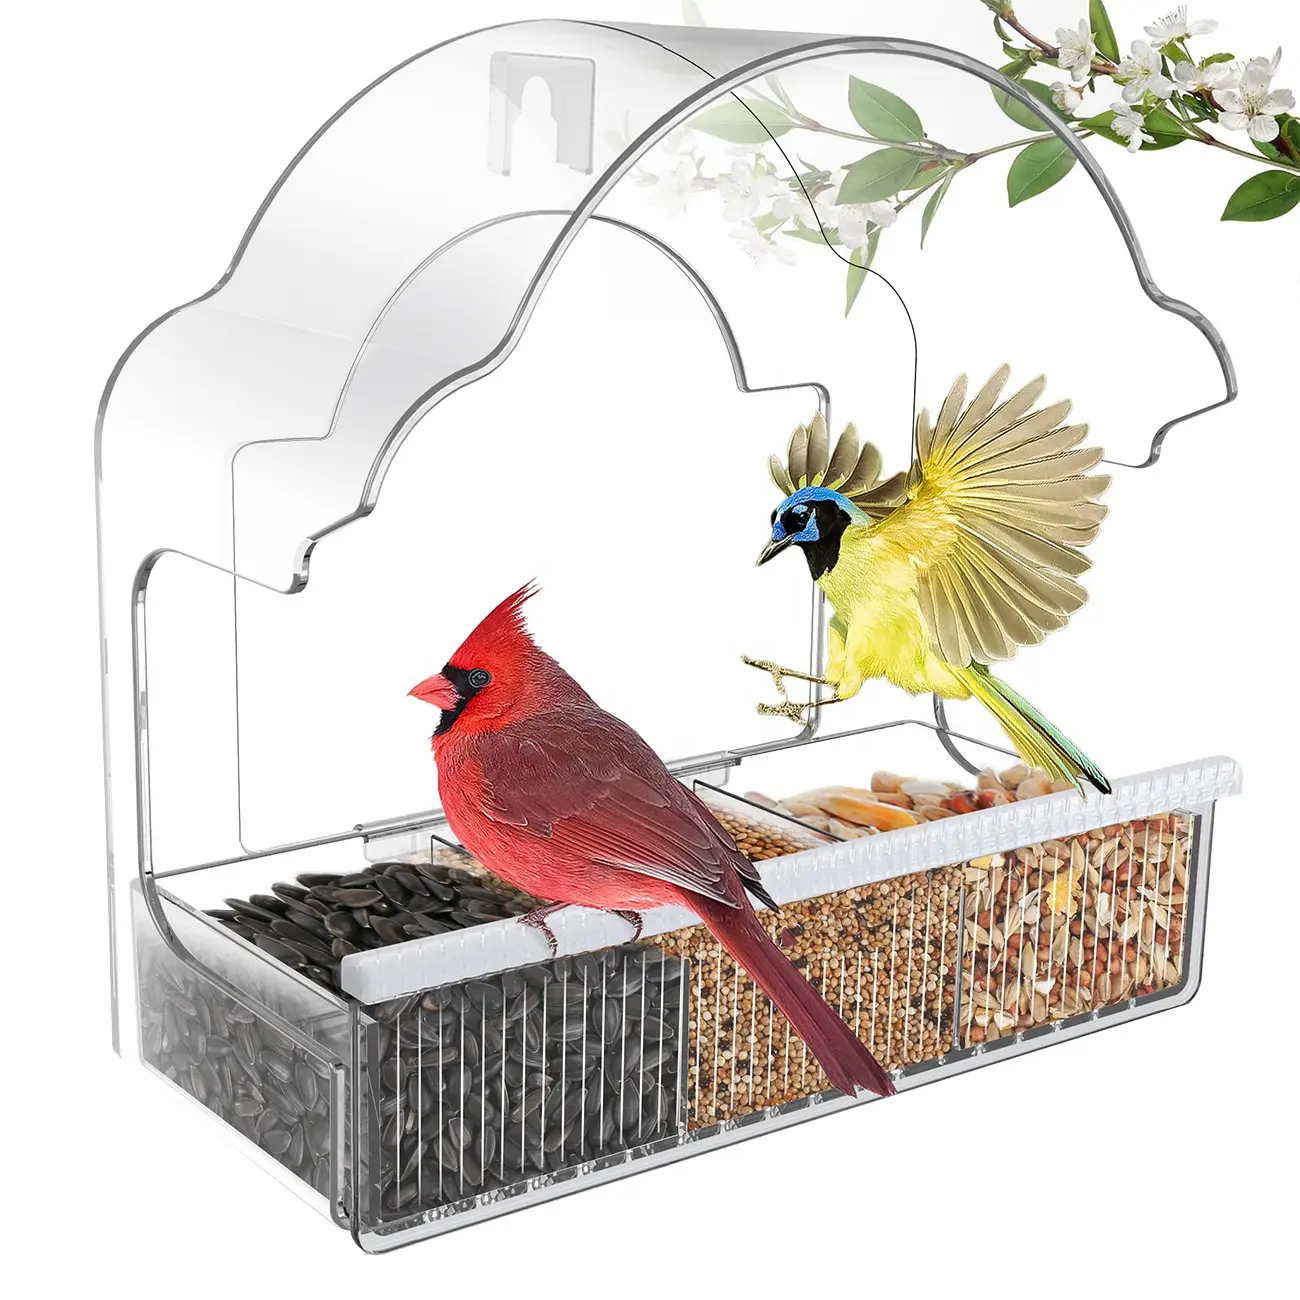 Bandeja de sementes para casa, alimentador acrílico para janelas e decoração de jardim, com o objetivo de pendurar pássaros selvagens ao ar livre